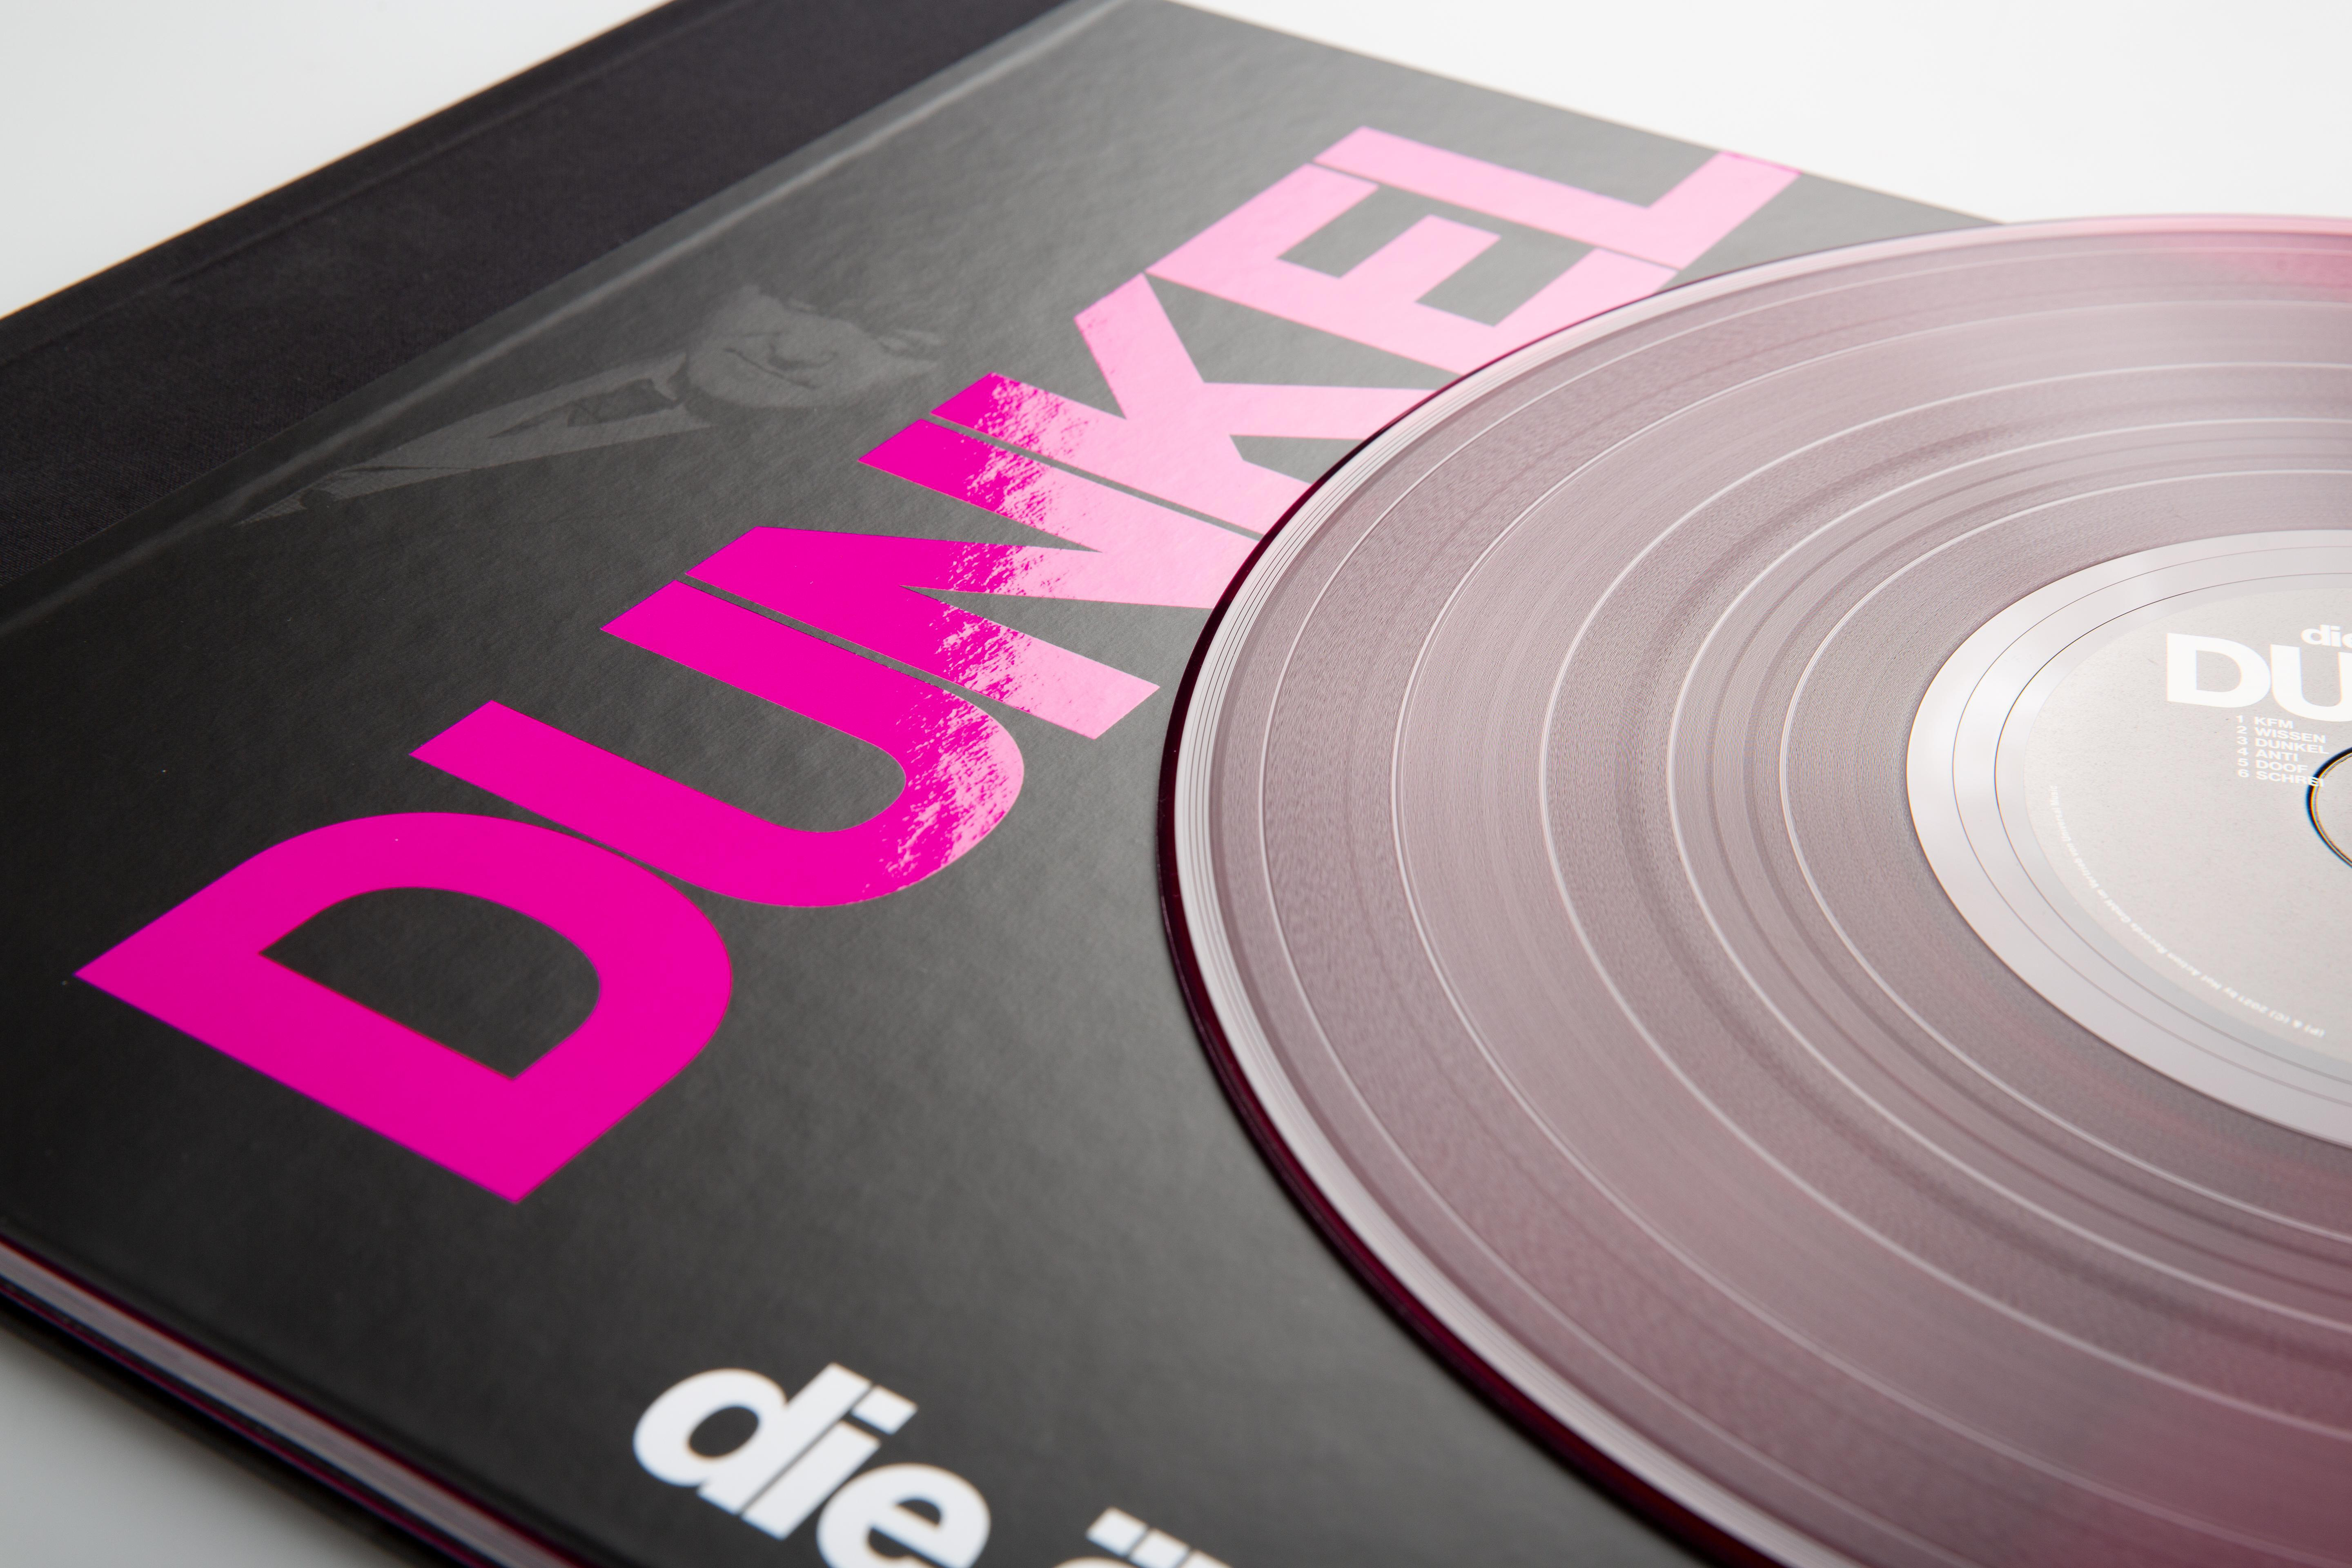 Die Ärzte - (Vinyl) Girlande, mit - lila-pink) im Doppelvinyl Schuber halbtransparentes (Ltd. DUNKEL